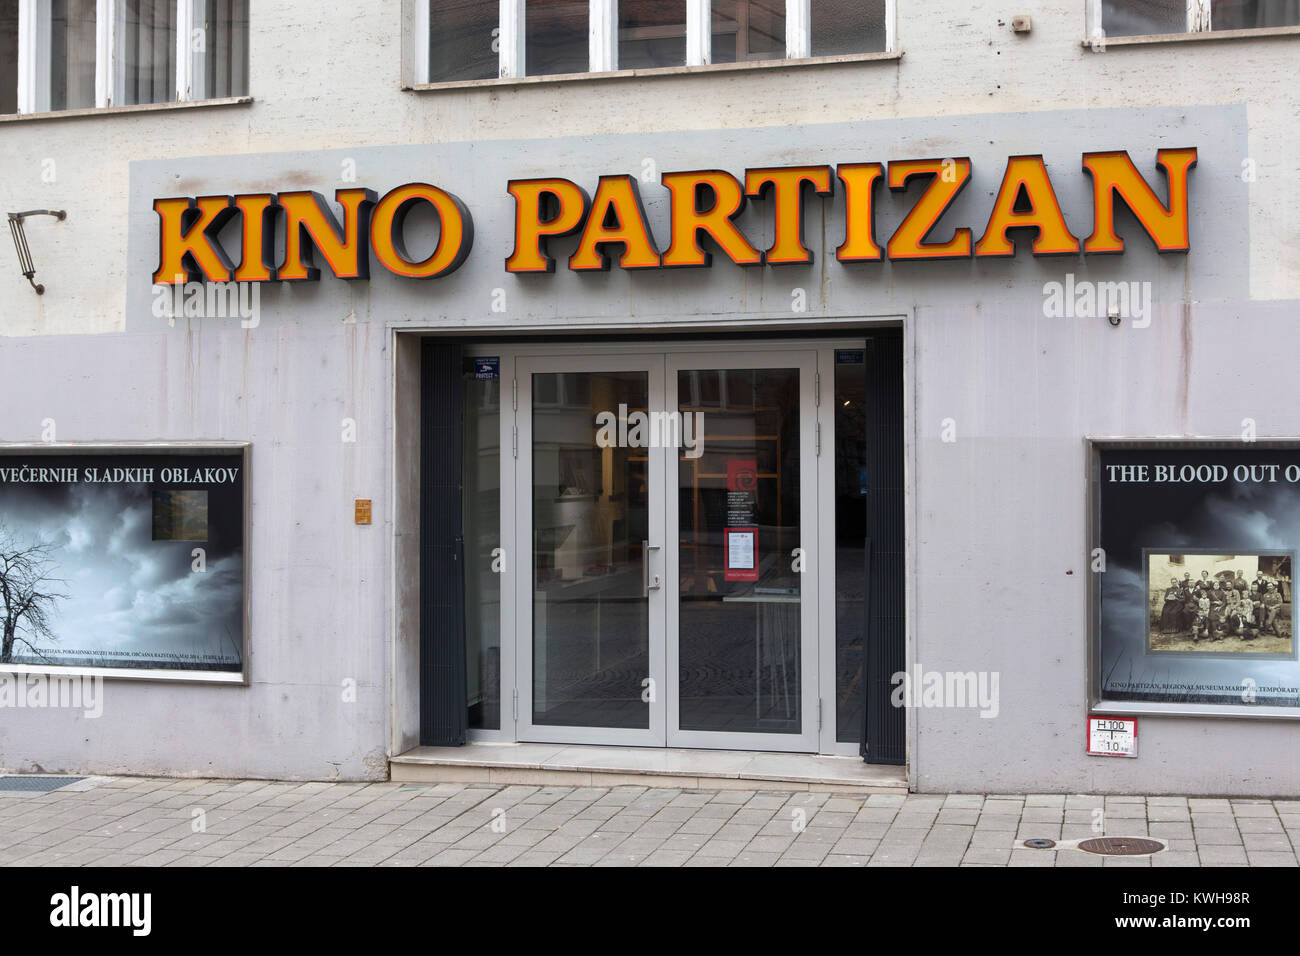 Kino Partizan in Maribor, Slovenia. The building has been a cinema. Stock Photo